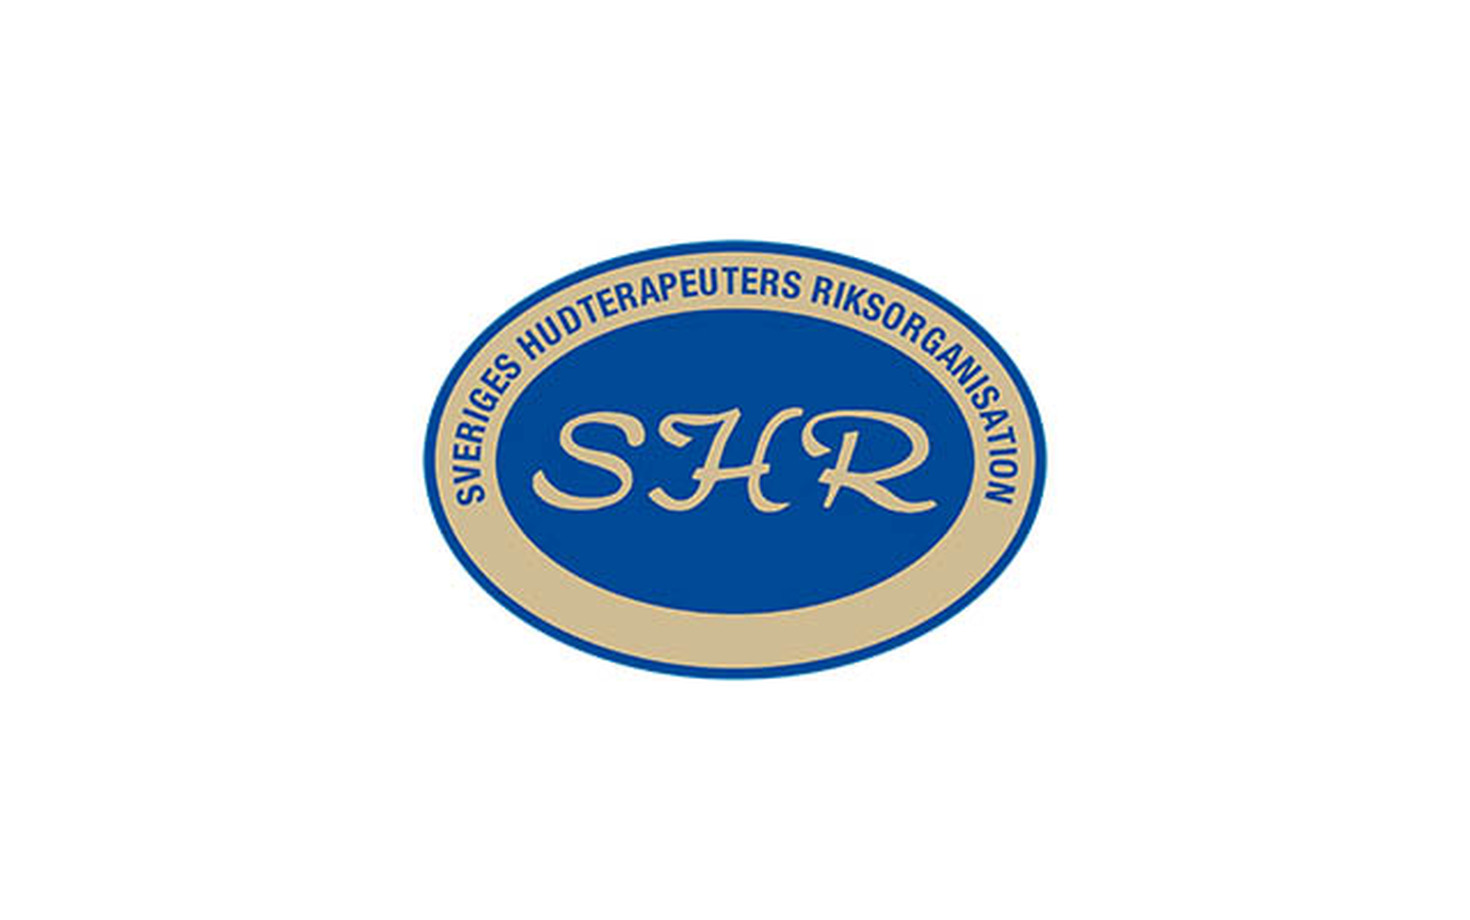 Sveriges Hudterapeuters Riksorganisation blir en del av Hantverkarnas Riksorganisation